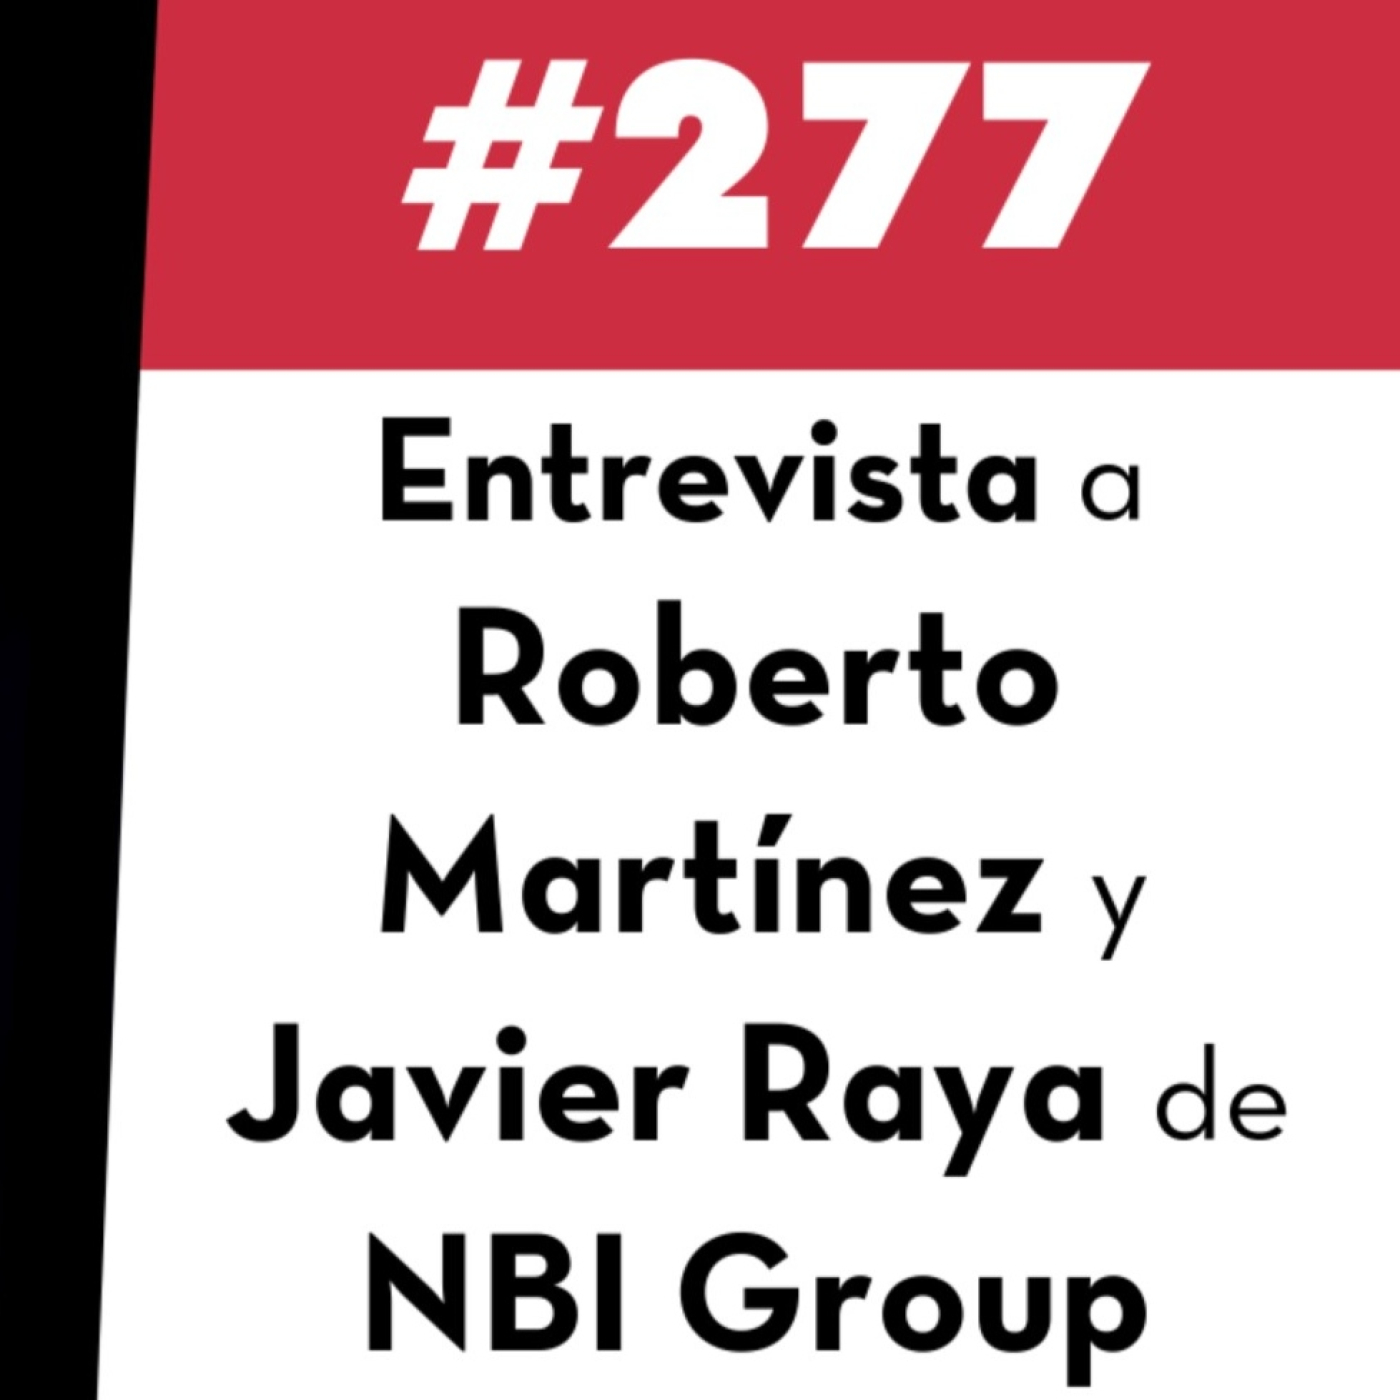 277. Entrevista a Roberto Martínez y Javier Raya de NBI Group